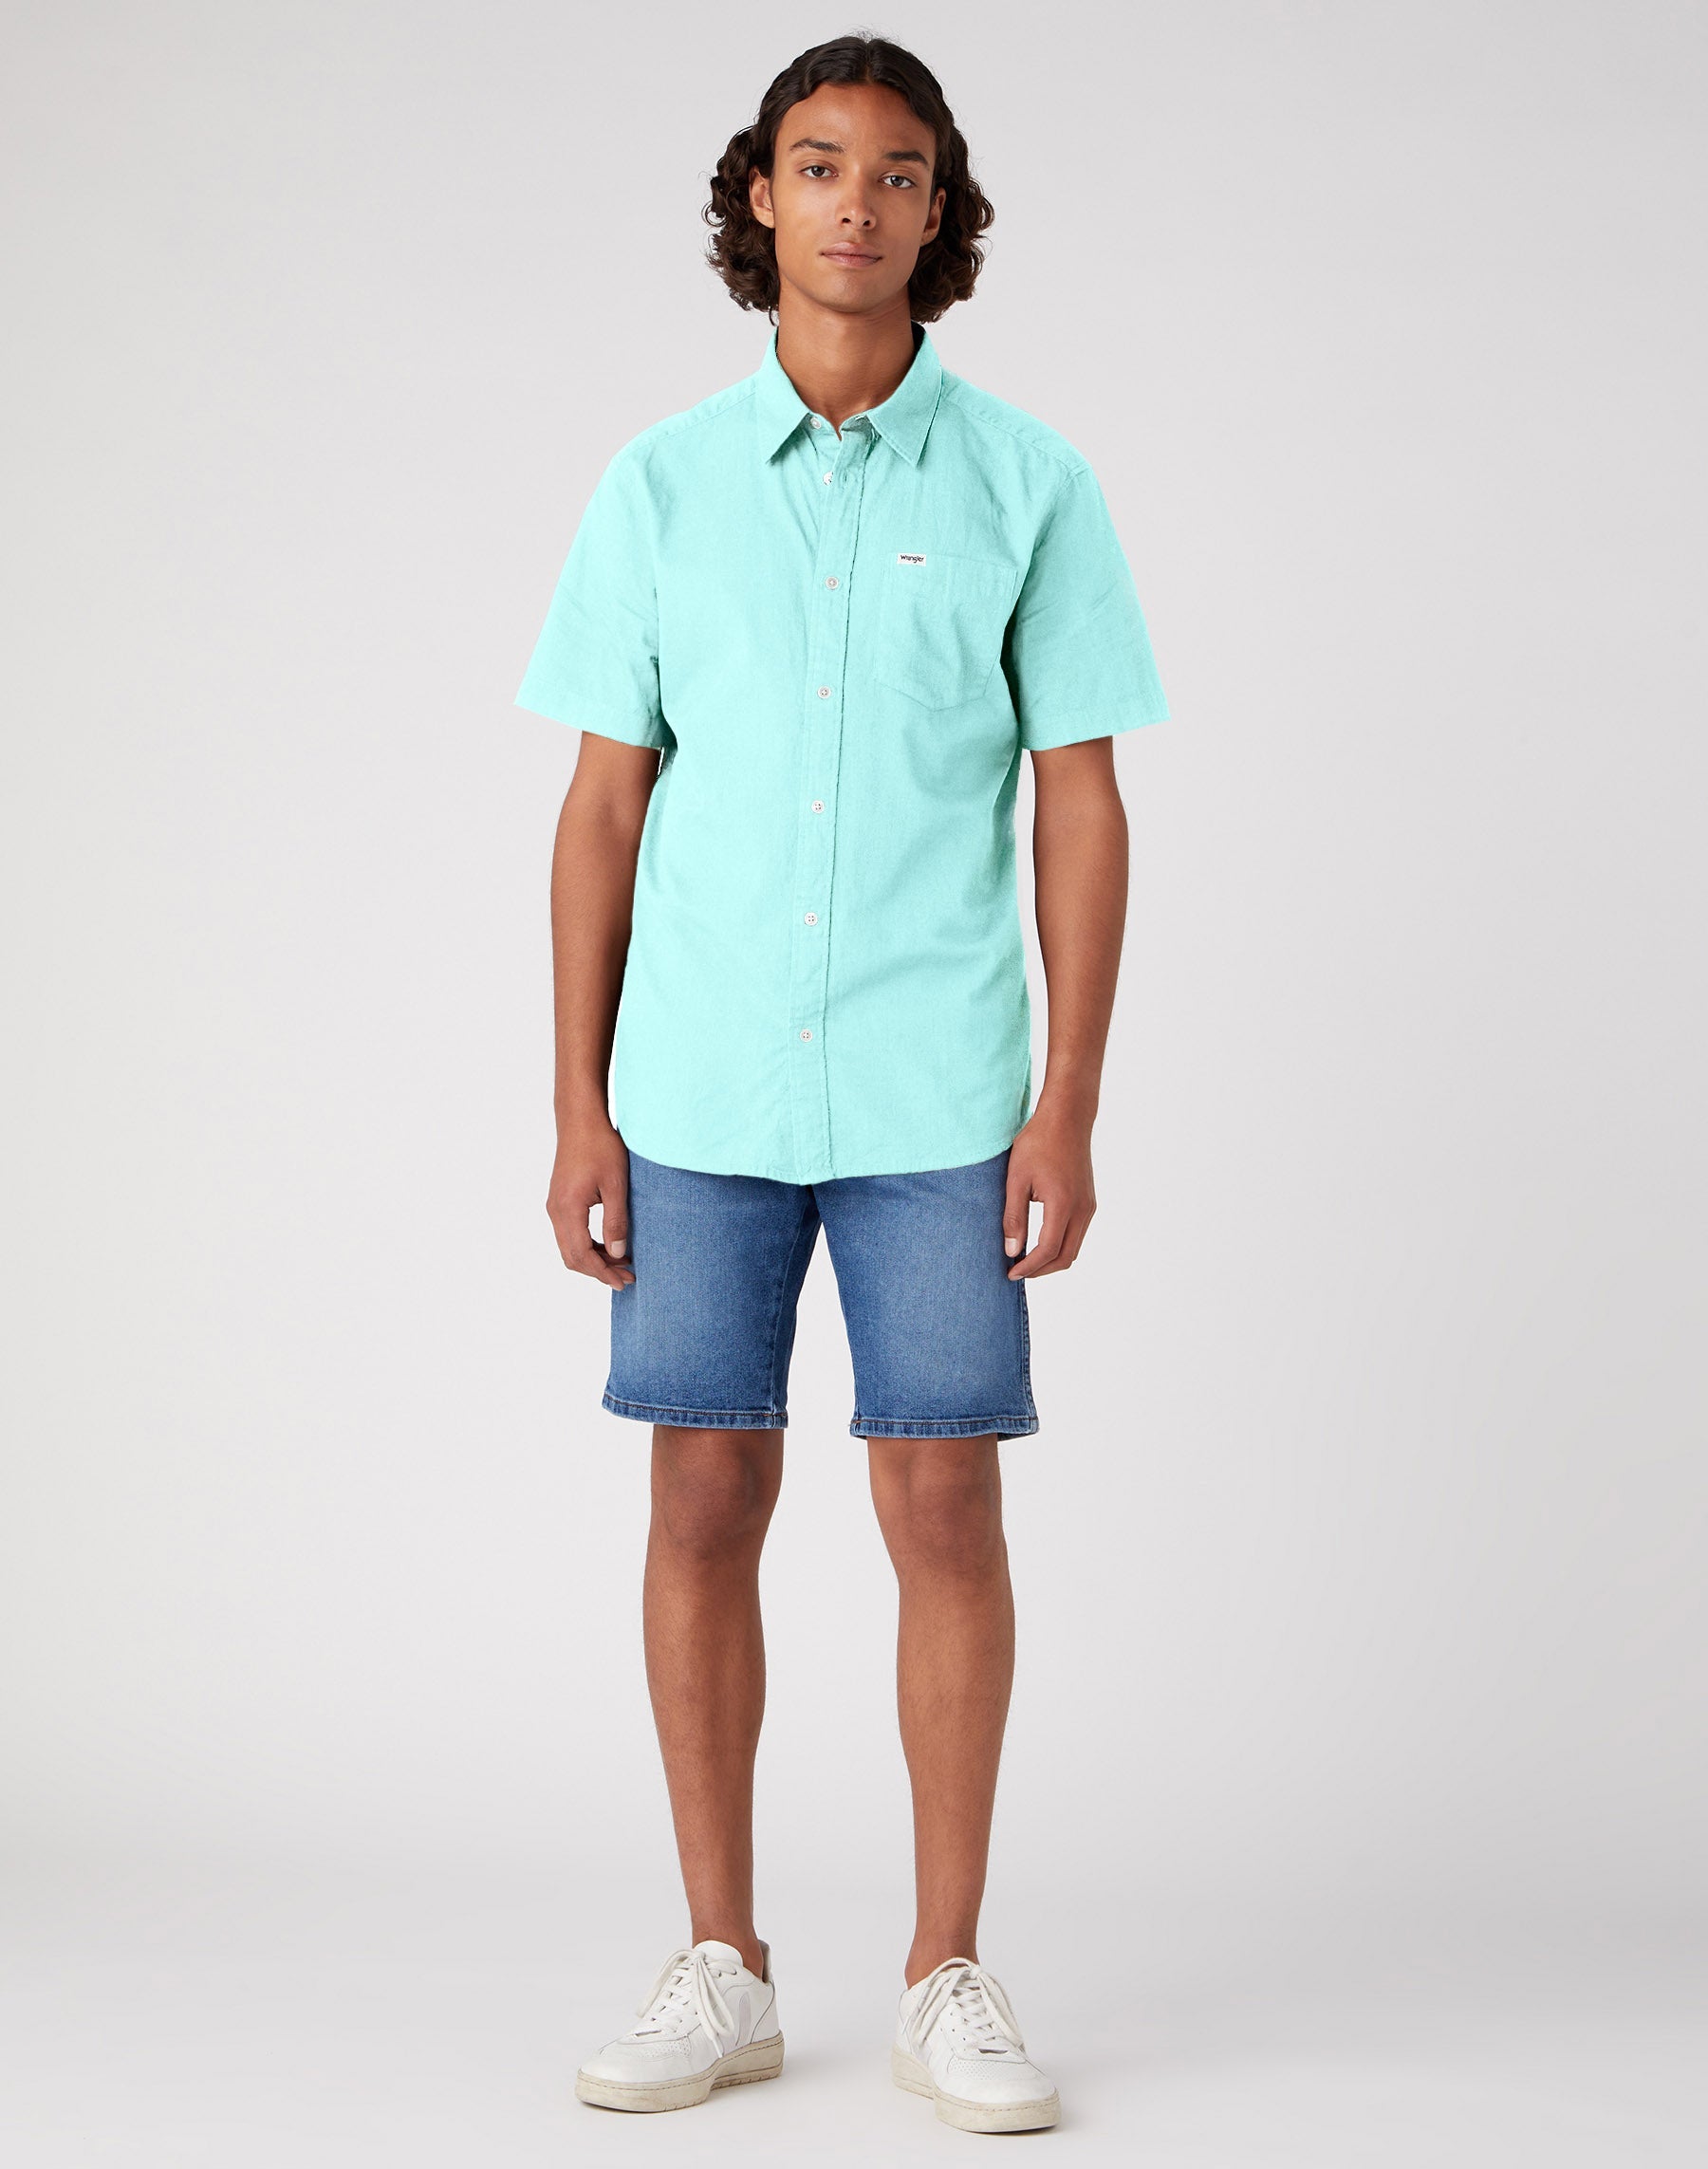 Short Sleeve One Pocket Shirt in Canal Blue Hemden Wrangler   